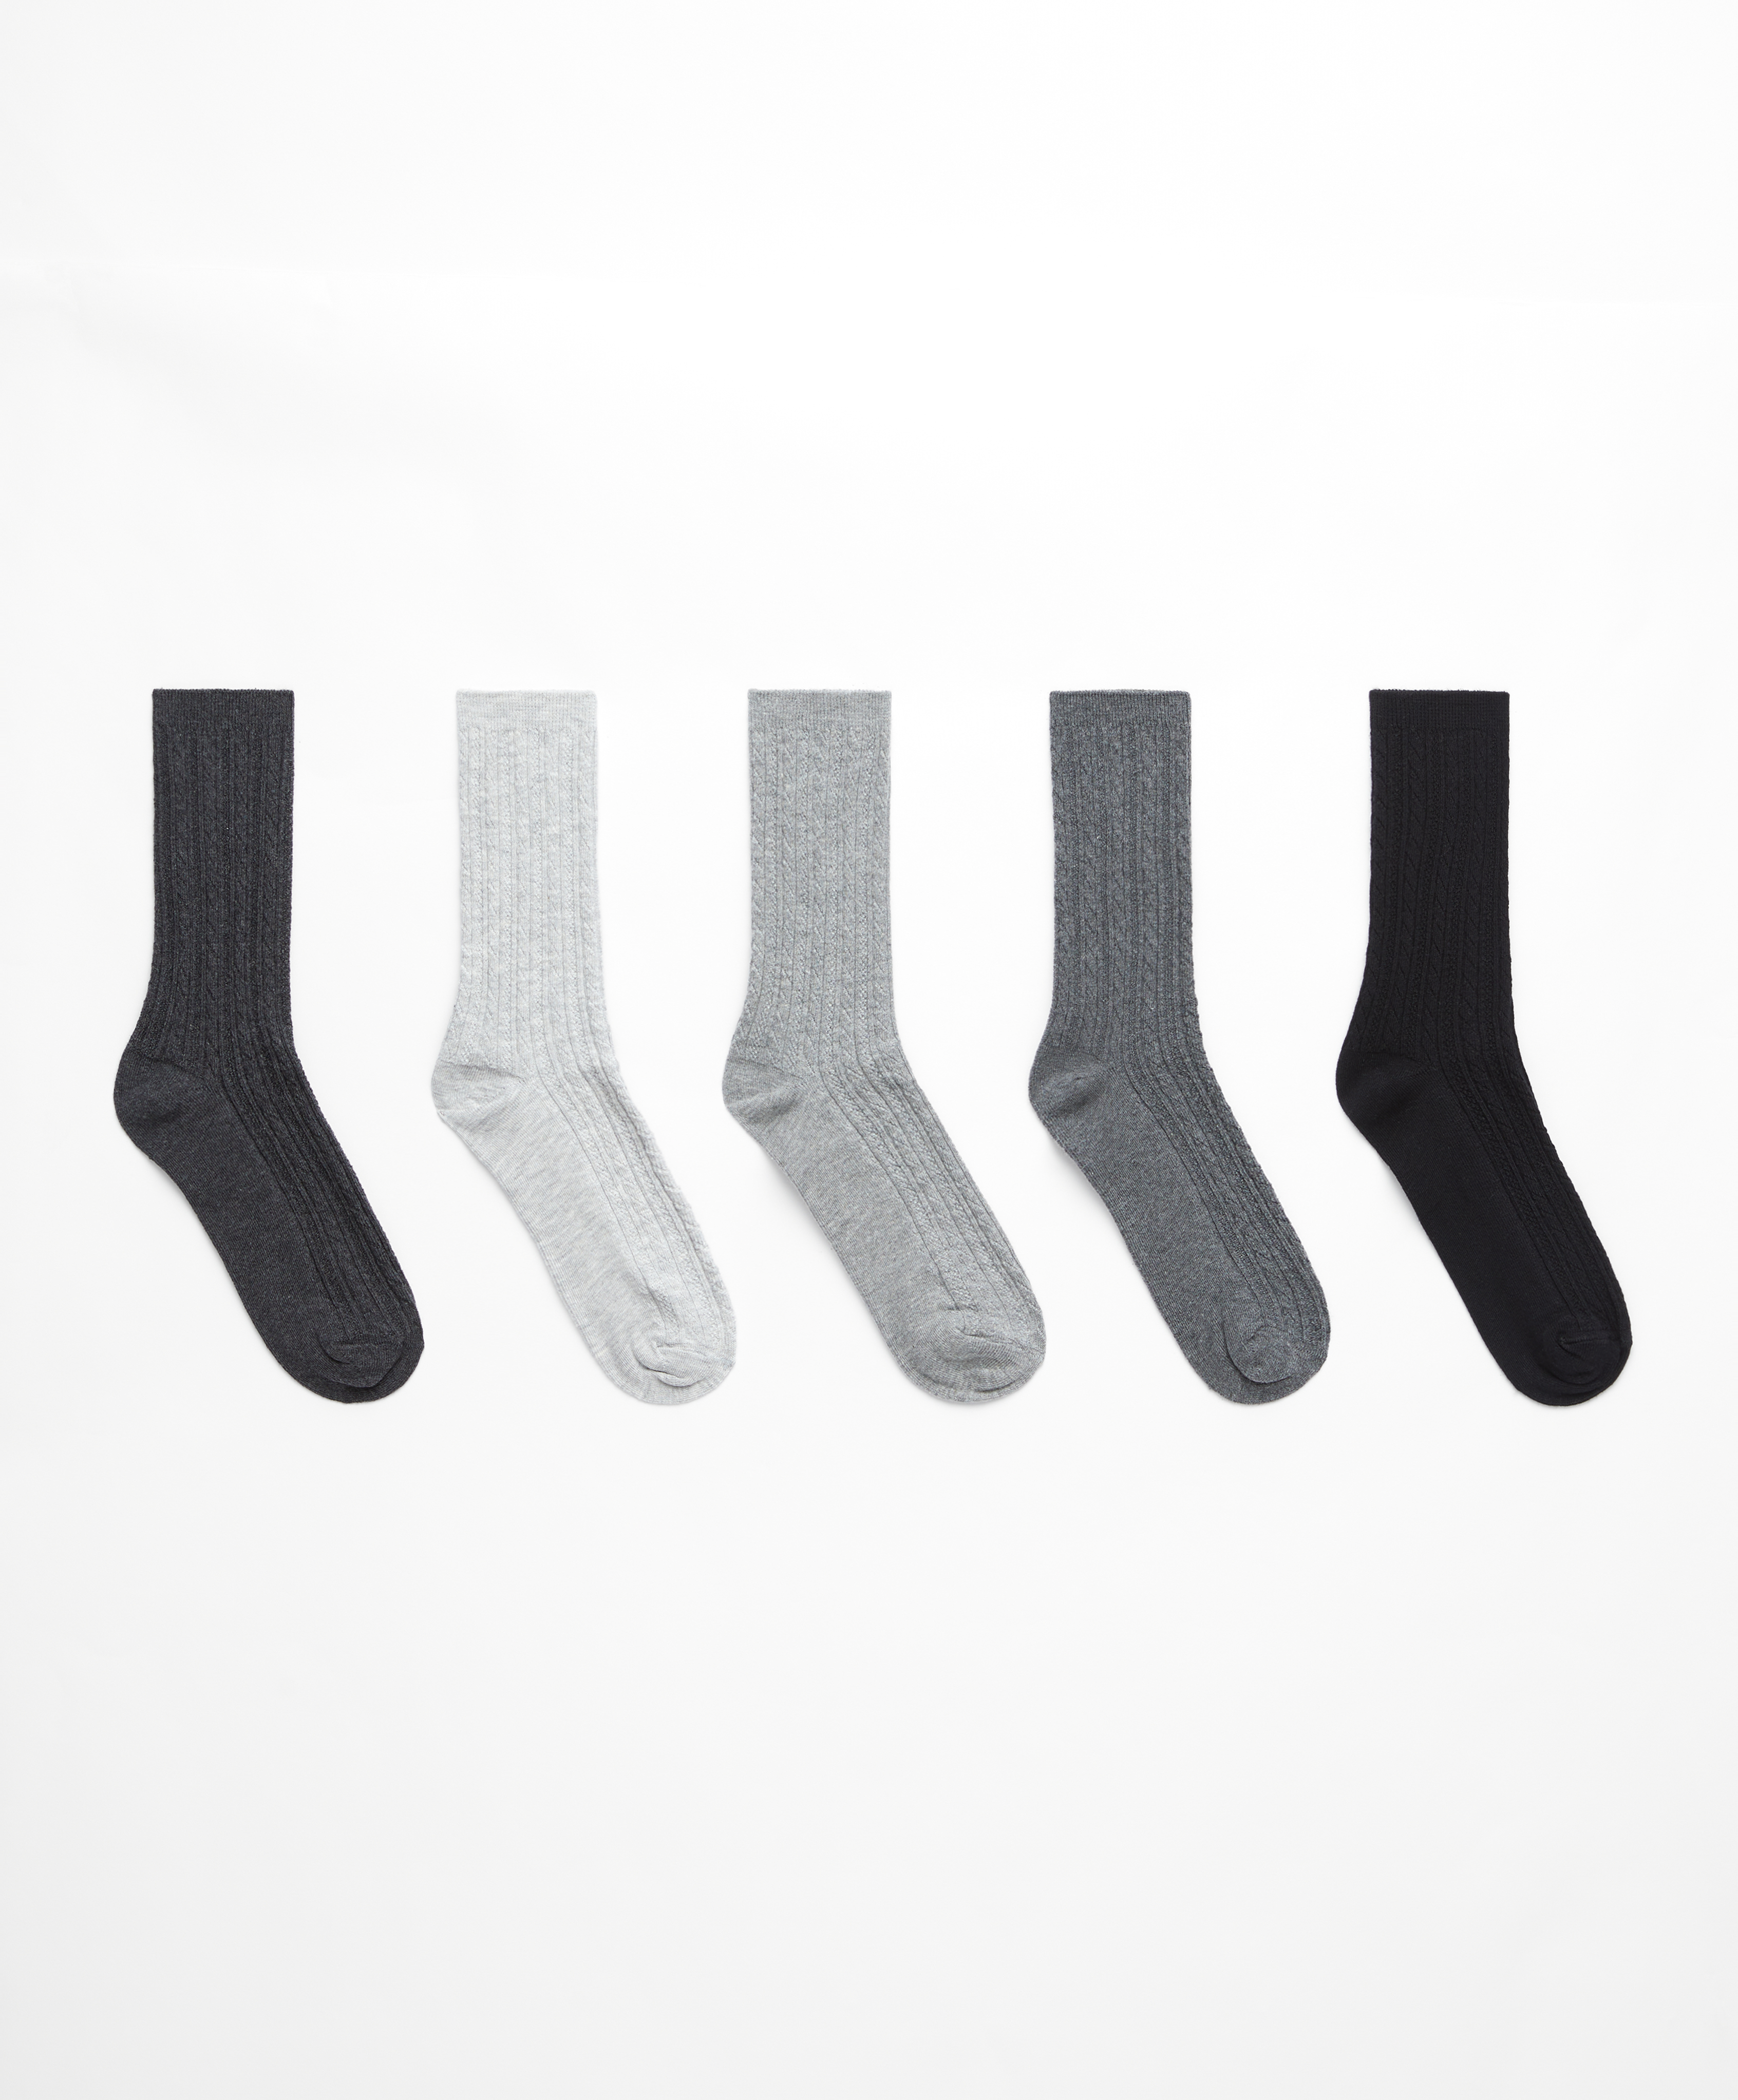 5 paar classic sokken van katoen met patroon